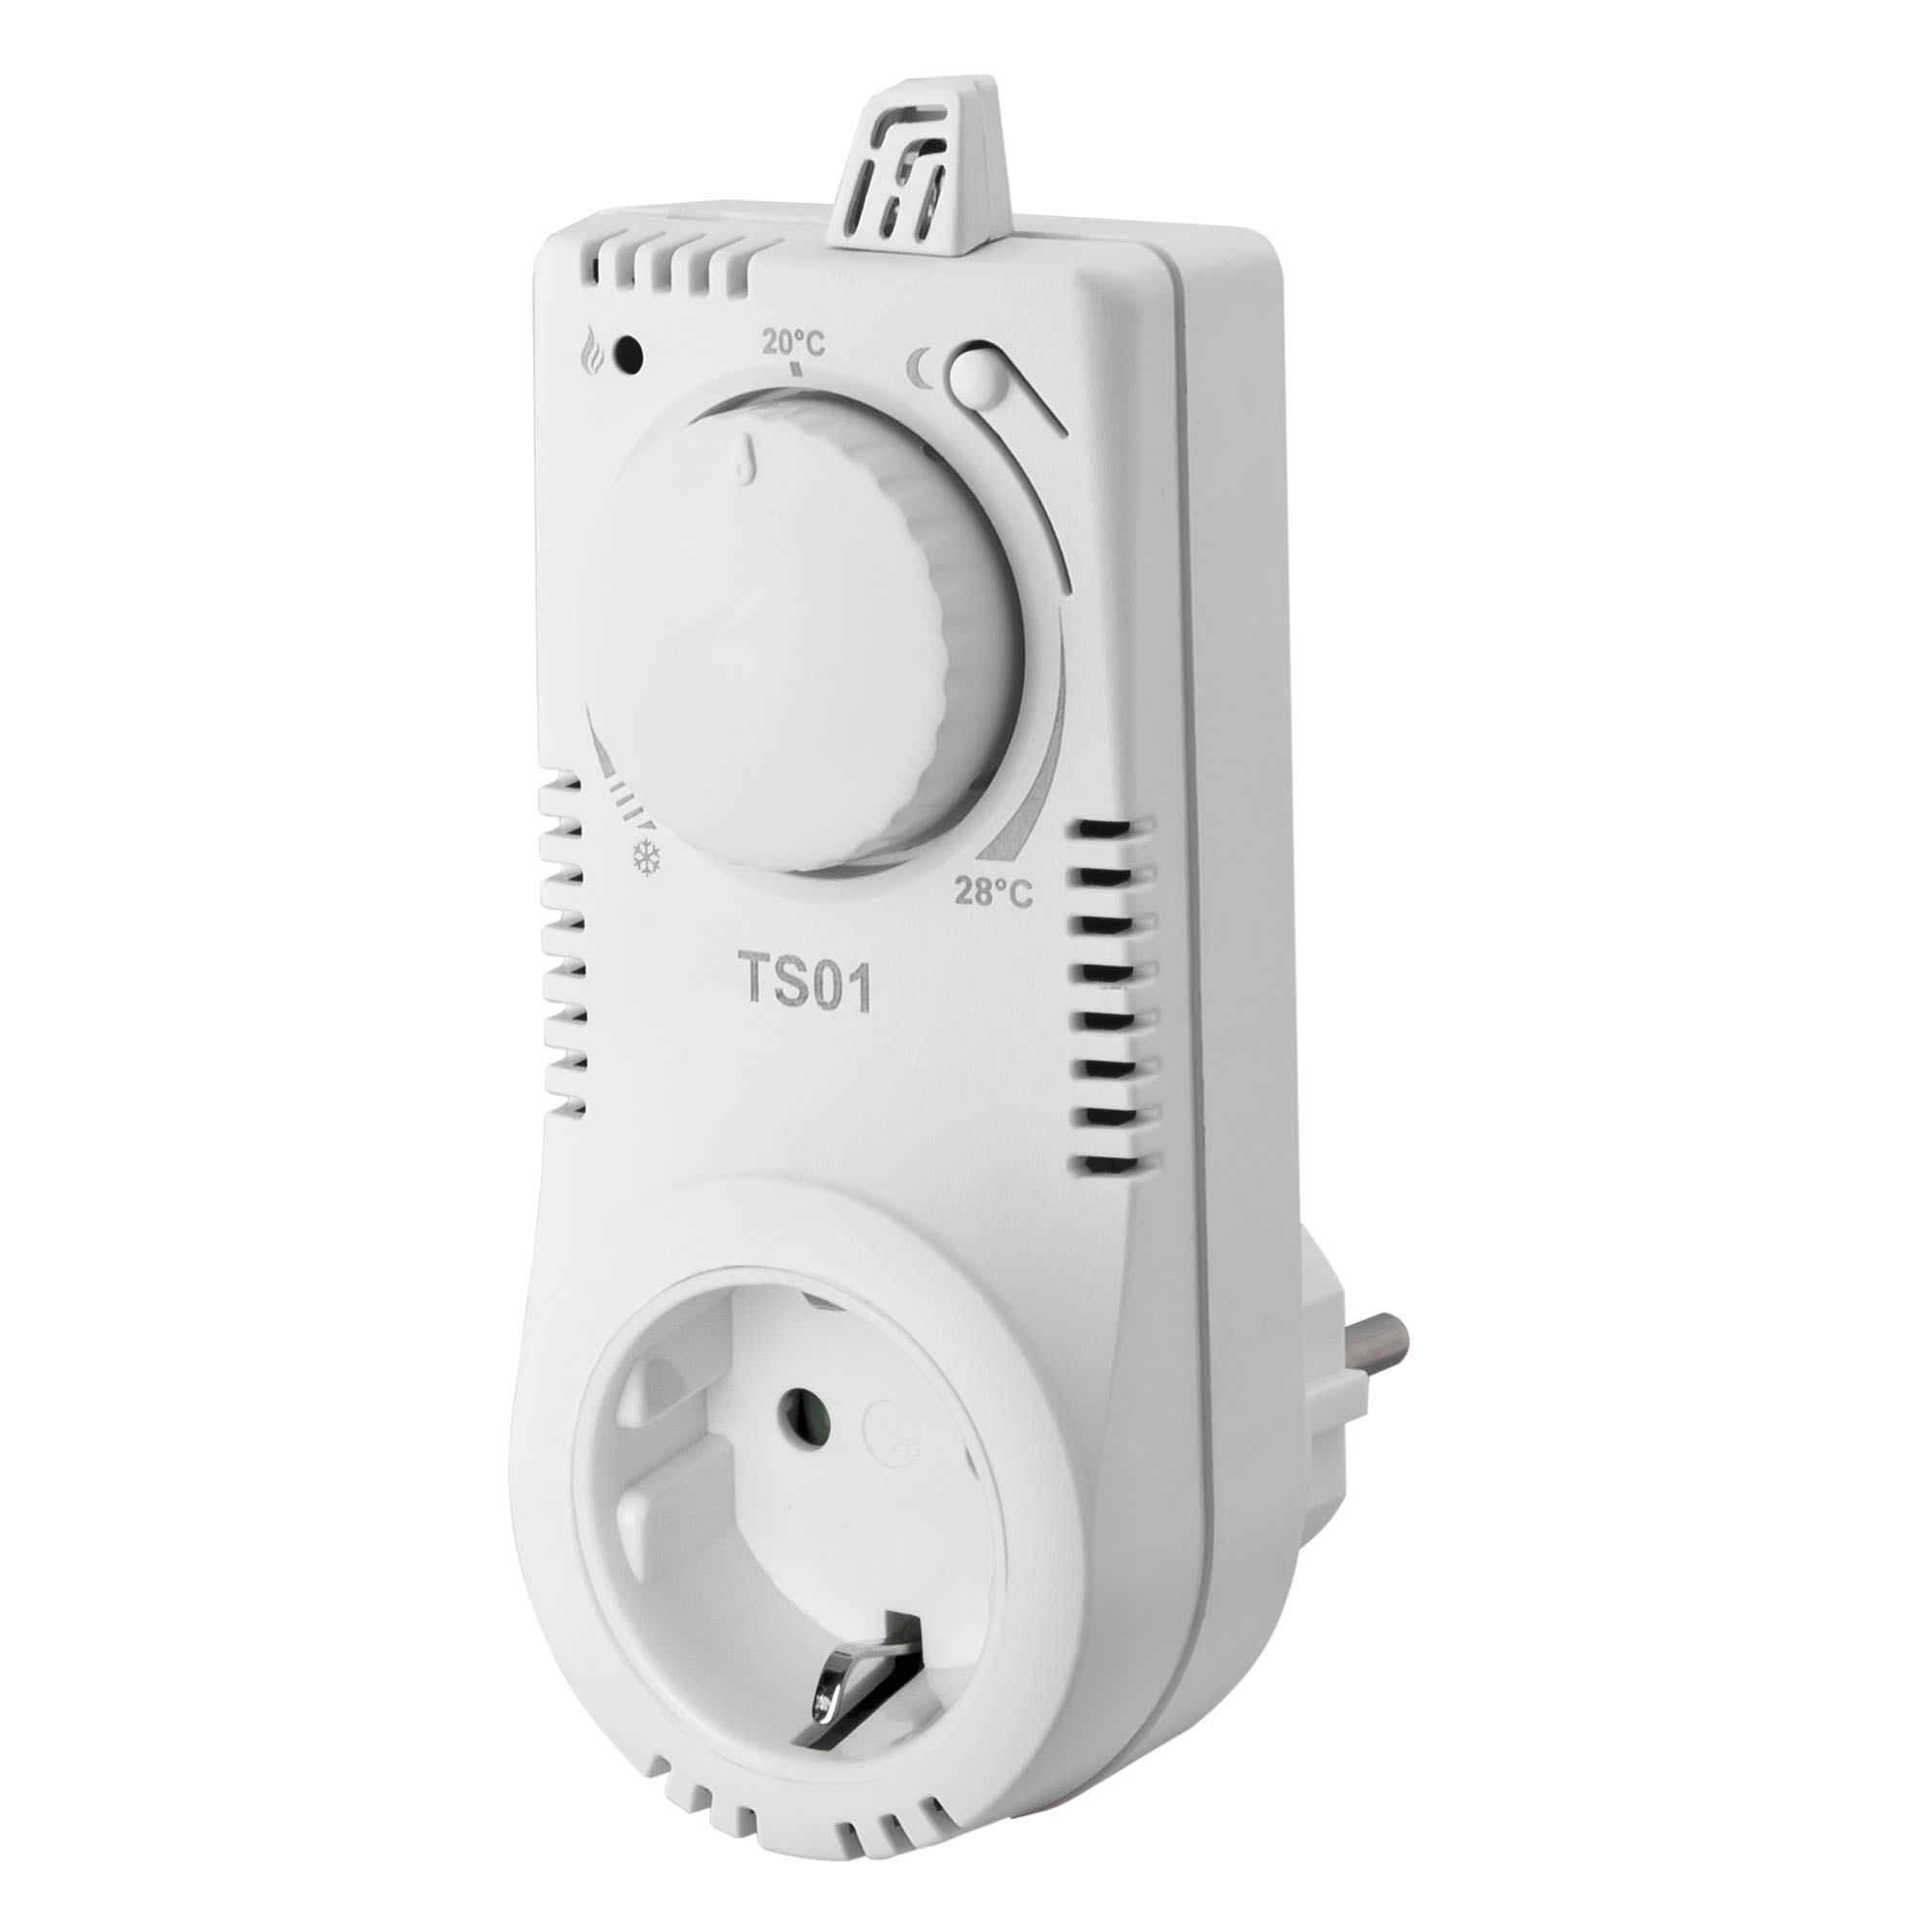 Digitaler Thermostat PT712-EI für Fußbodenheizung mit externen